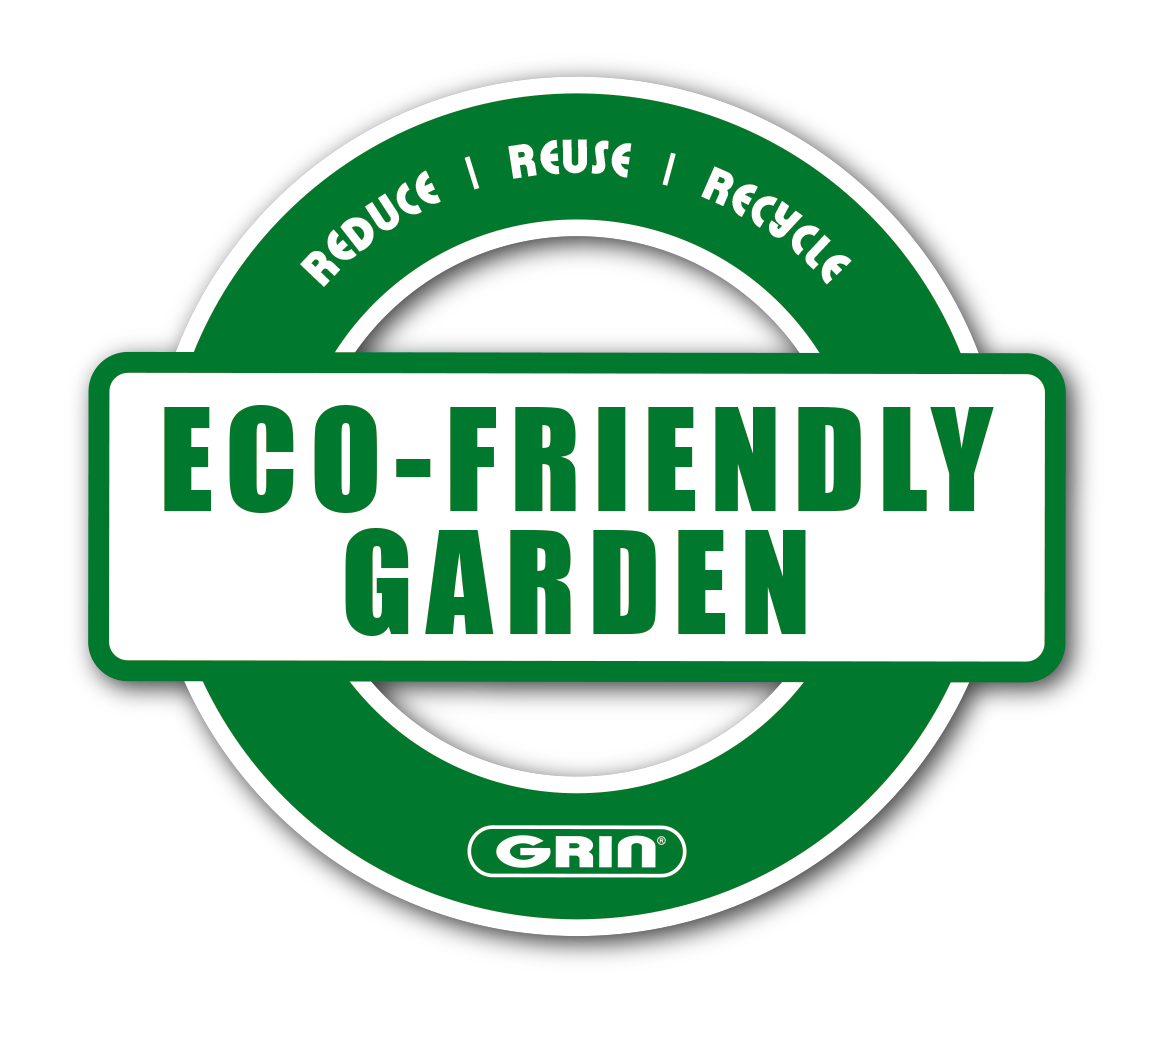 GRIN-Eco Friendly Garden-EN